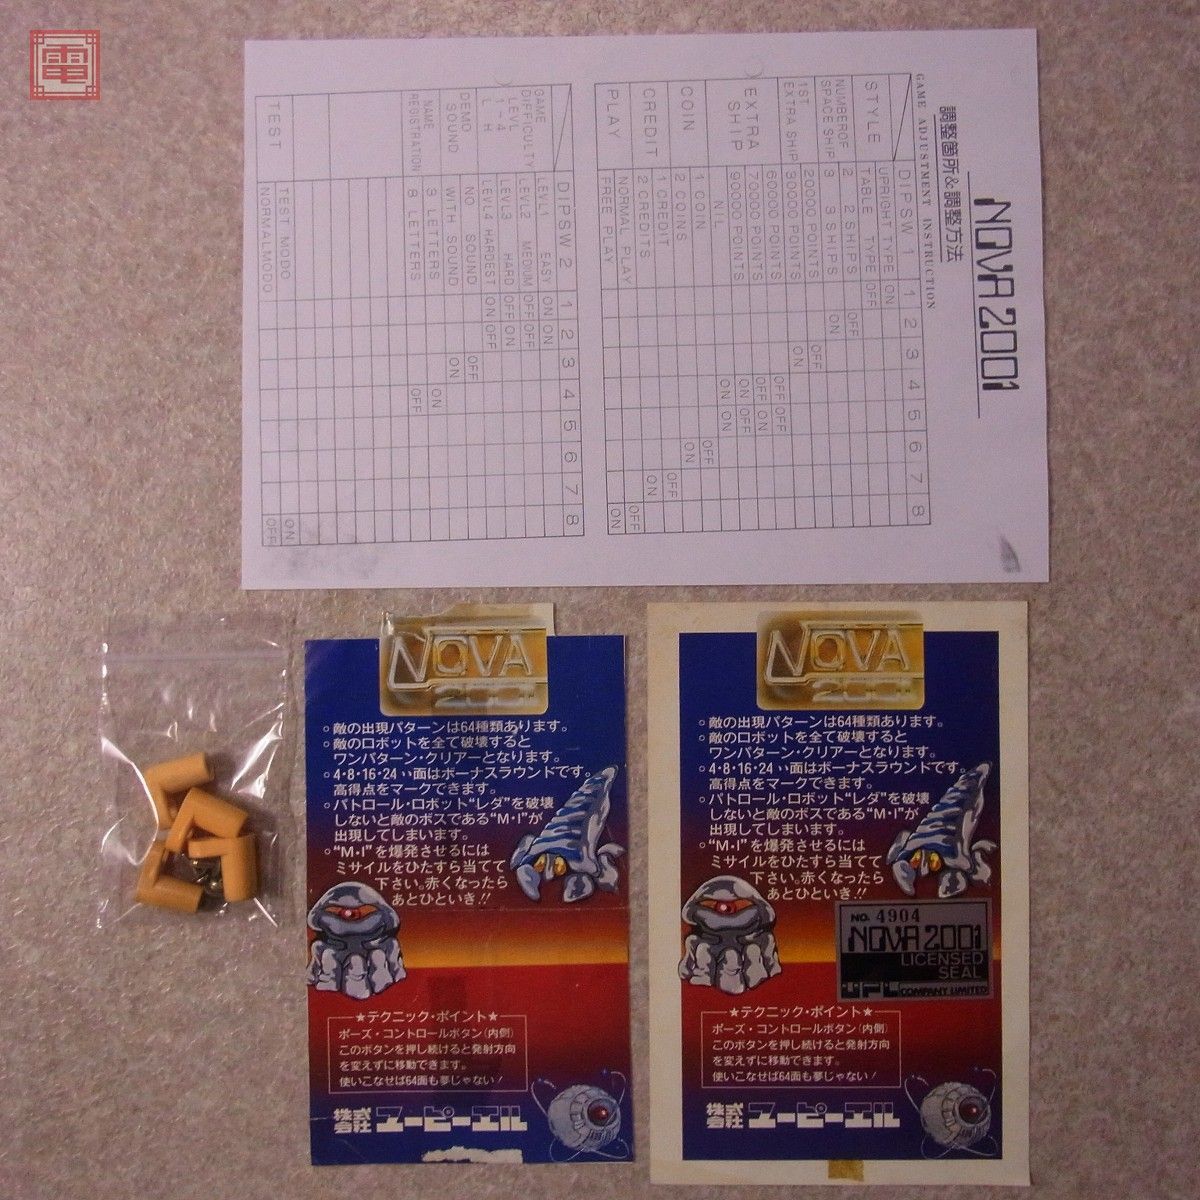 ノバ2001 NOVA2001 アーケードゲーム基板 - ゲーム